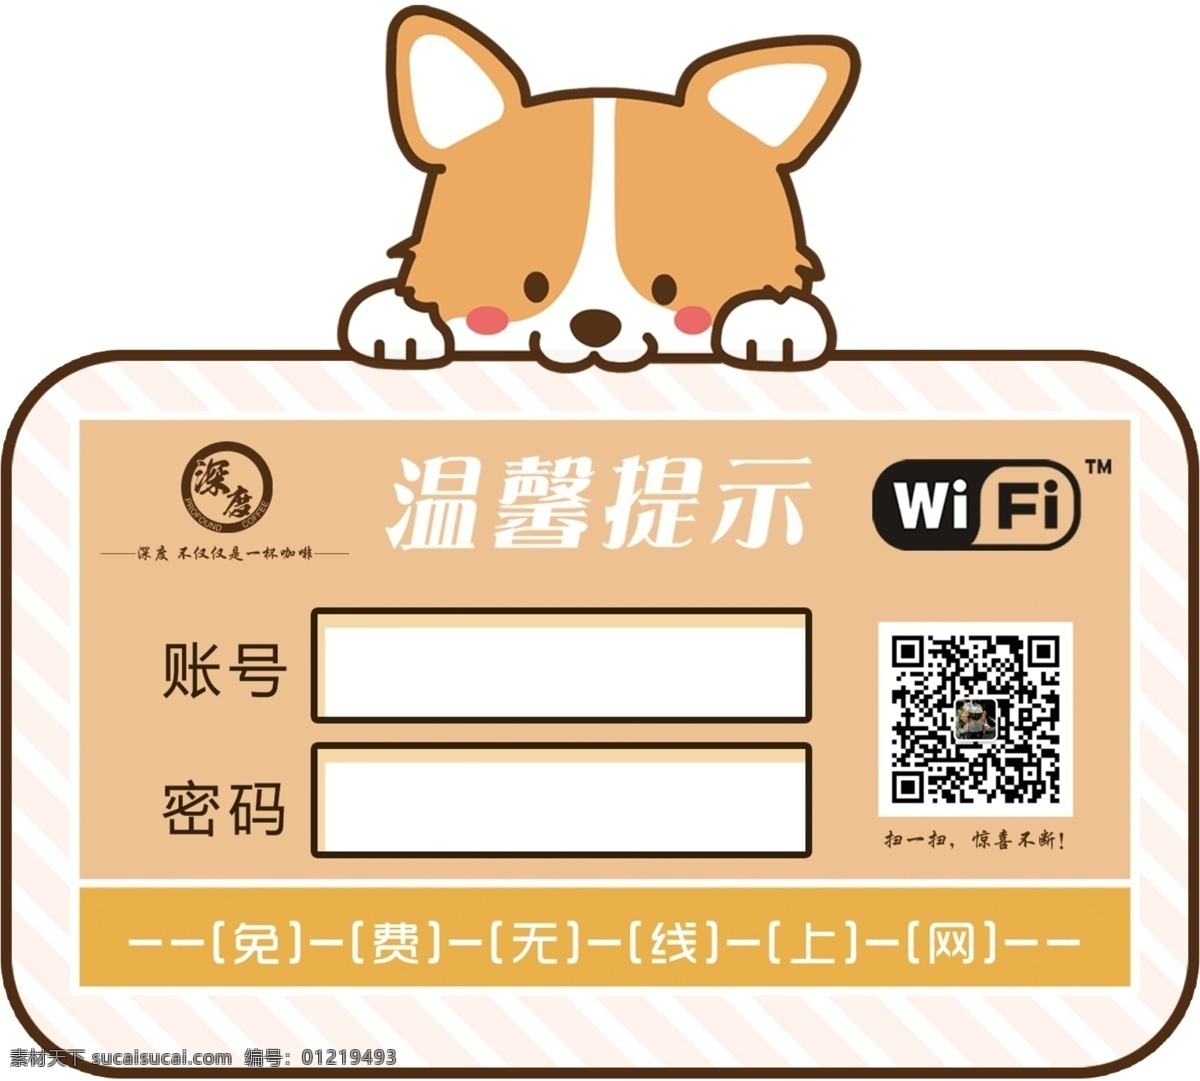 wifi牌 免费 上网 咖啡店 二维码 展板模板